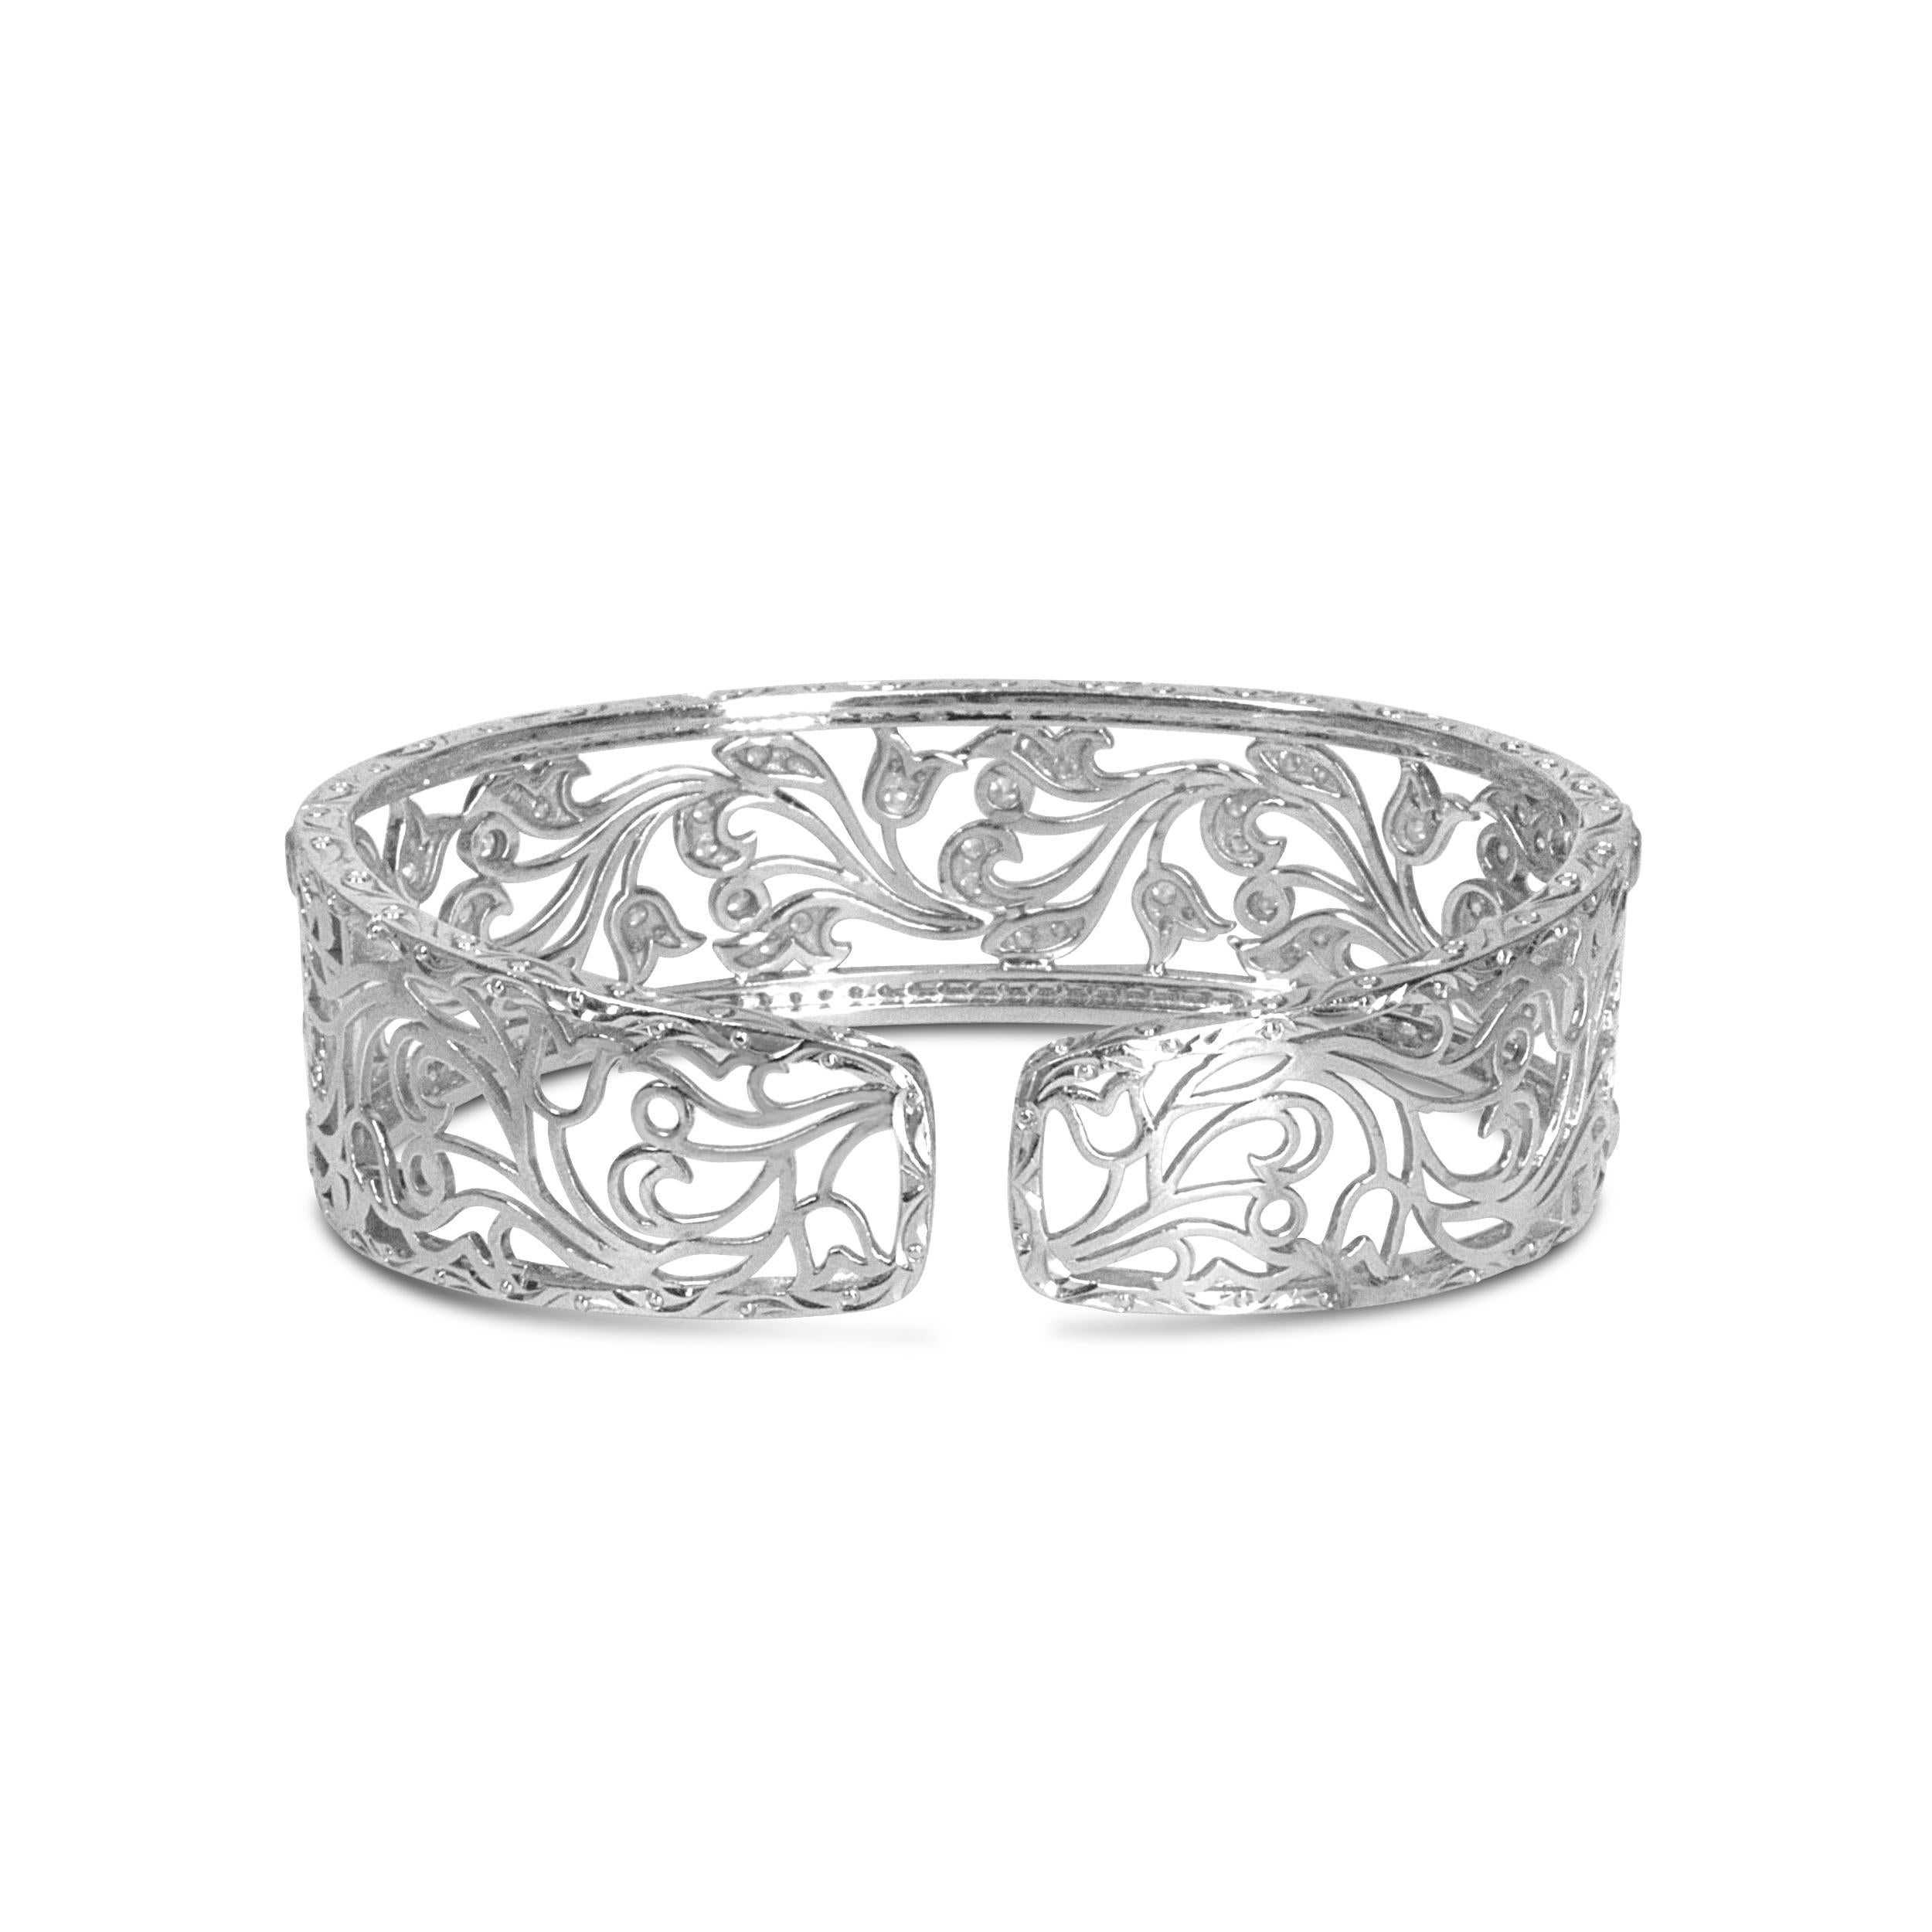 Diese prächtige, durchbrochene Armspange ist ein Prunkstück mit 164 runden weißen Diamanten in einer eleganten Pflasterfassung. Ein prächtiges durchbrochenes, florales, filigranes Wirbeldesign macht dieses Schmuckstück atemberaubend, und es strahlt